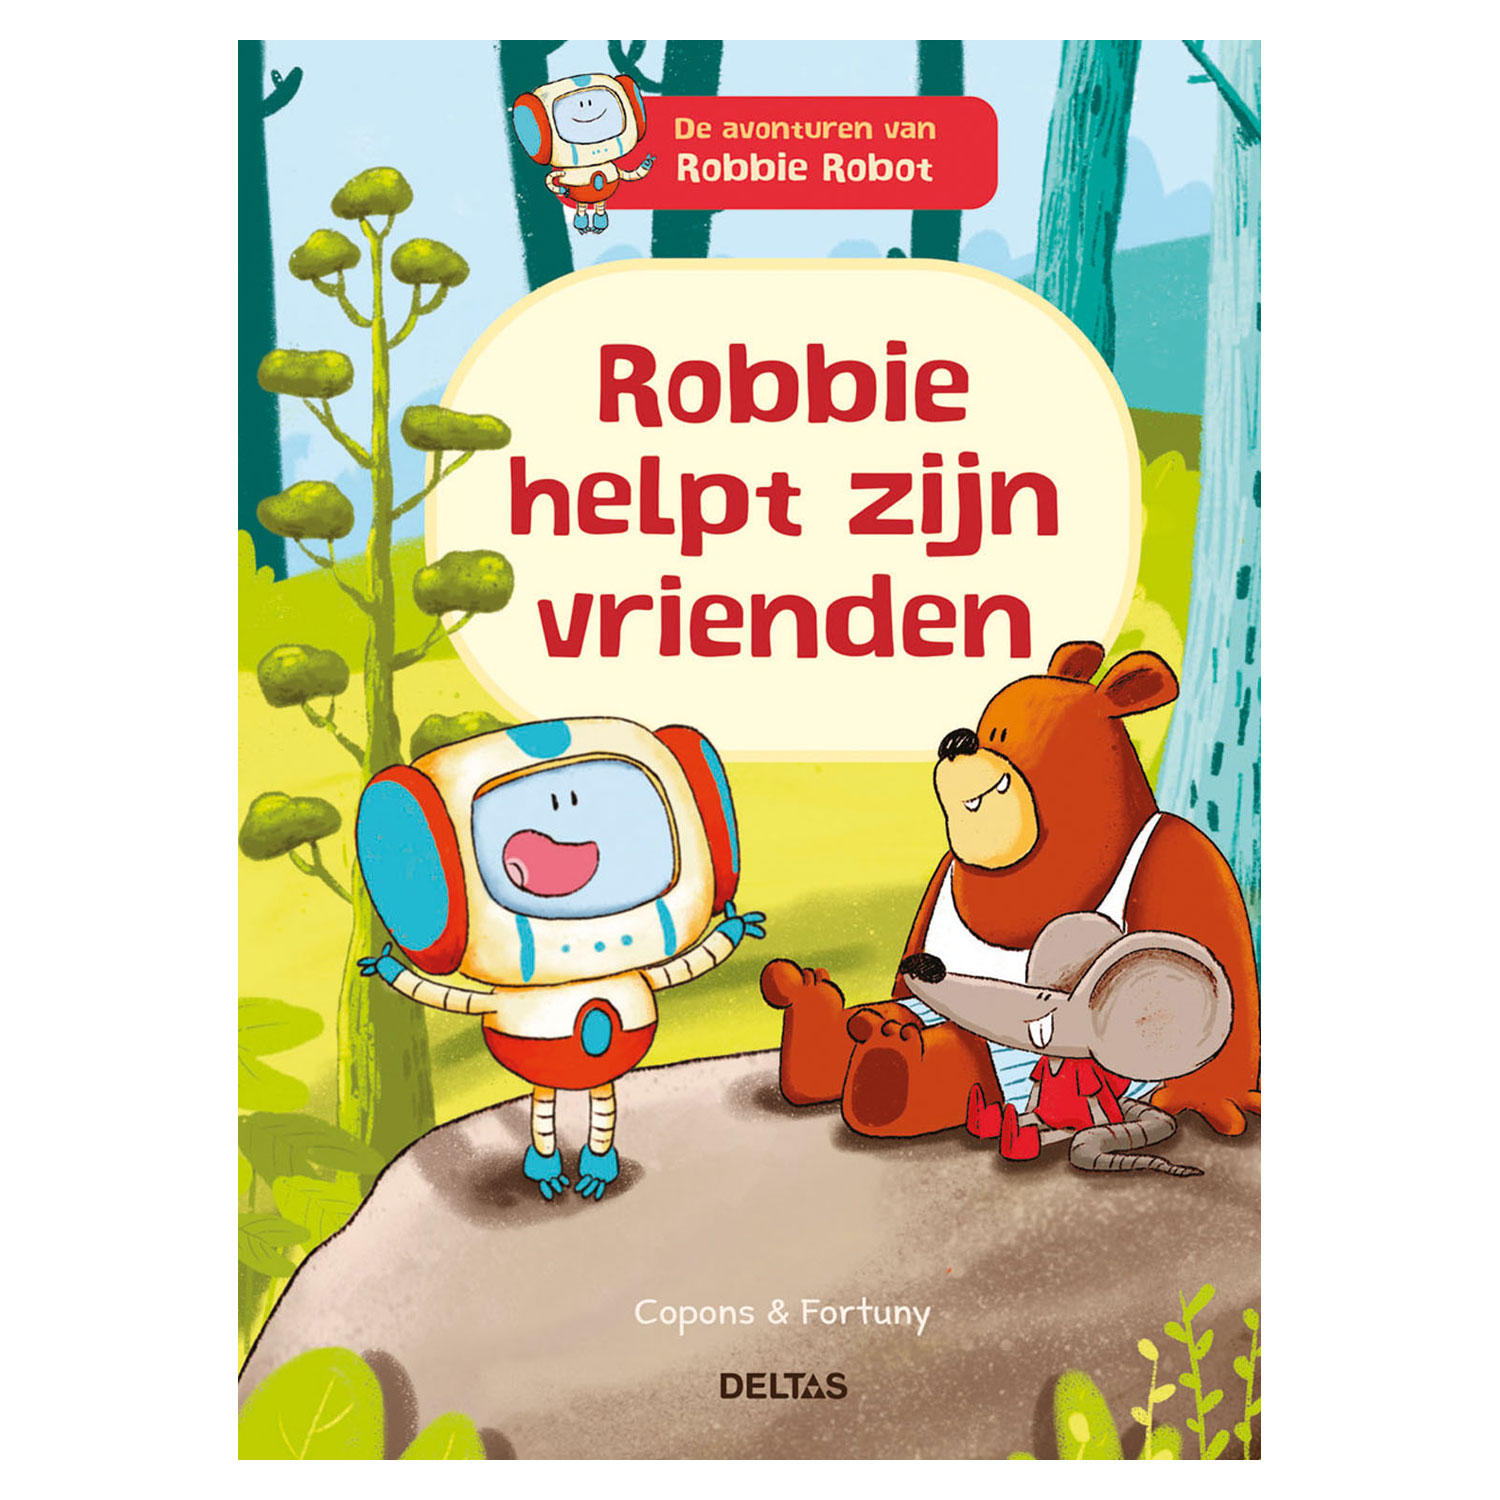 De avonturen van Robbie Robot - Robbie helpt zijn vrienden